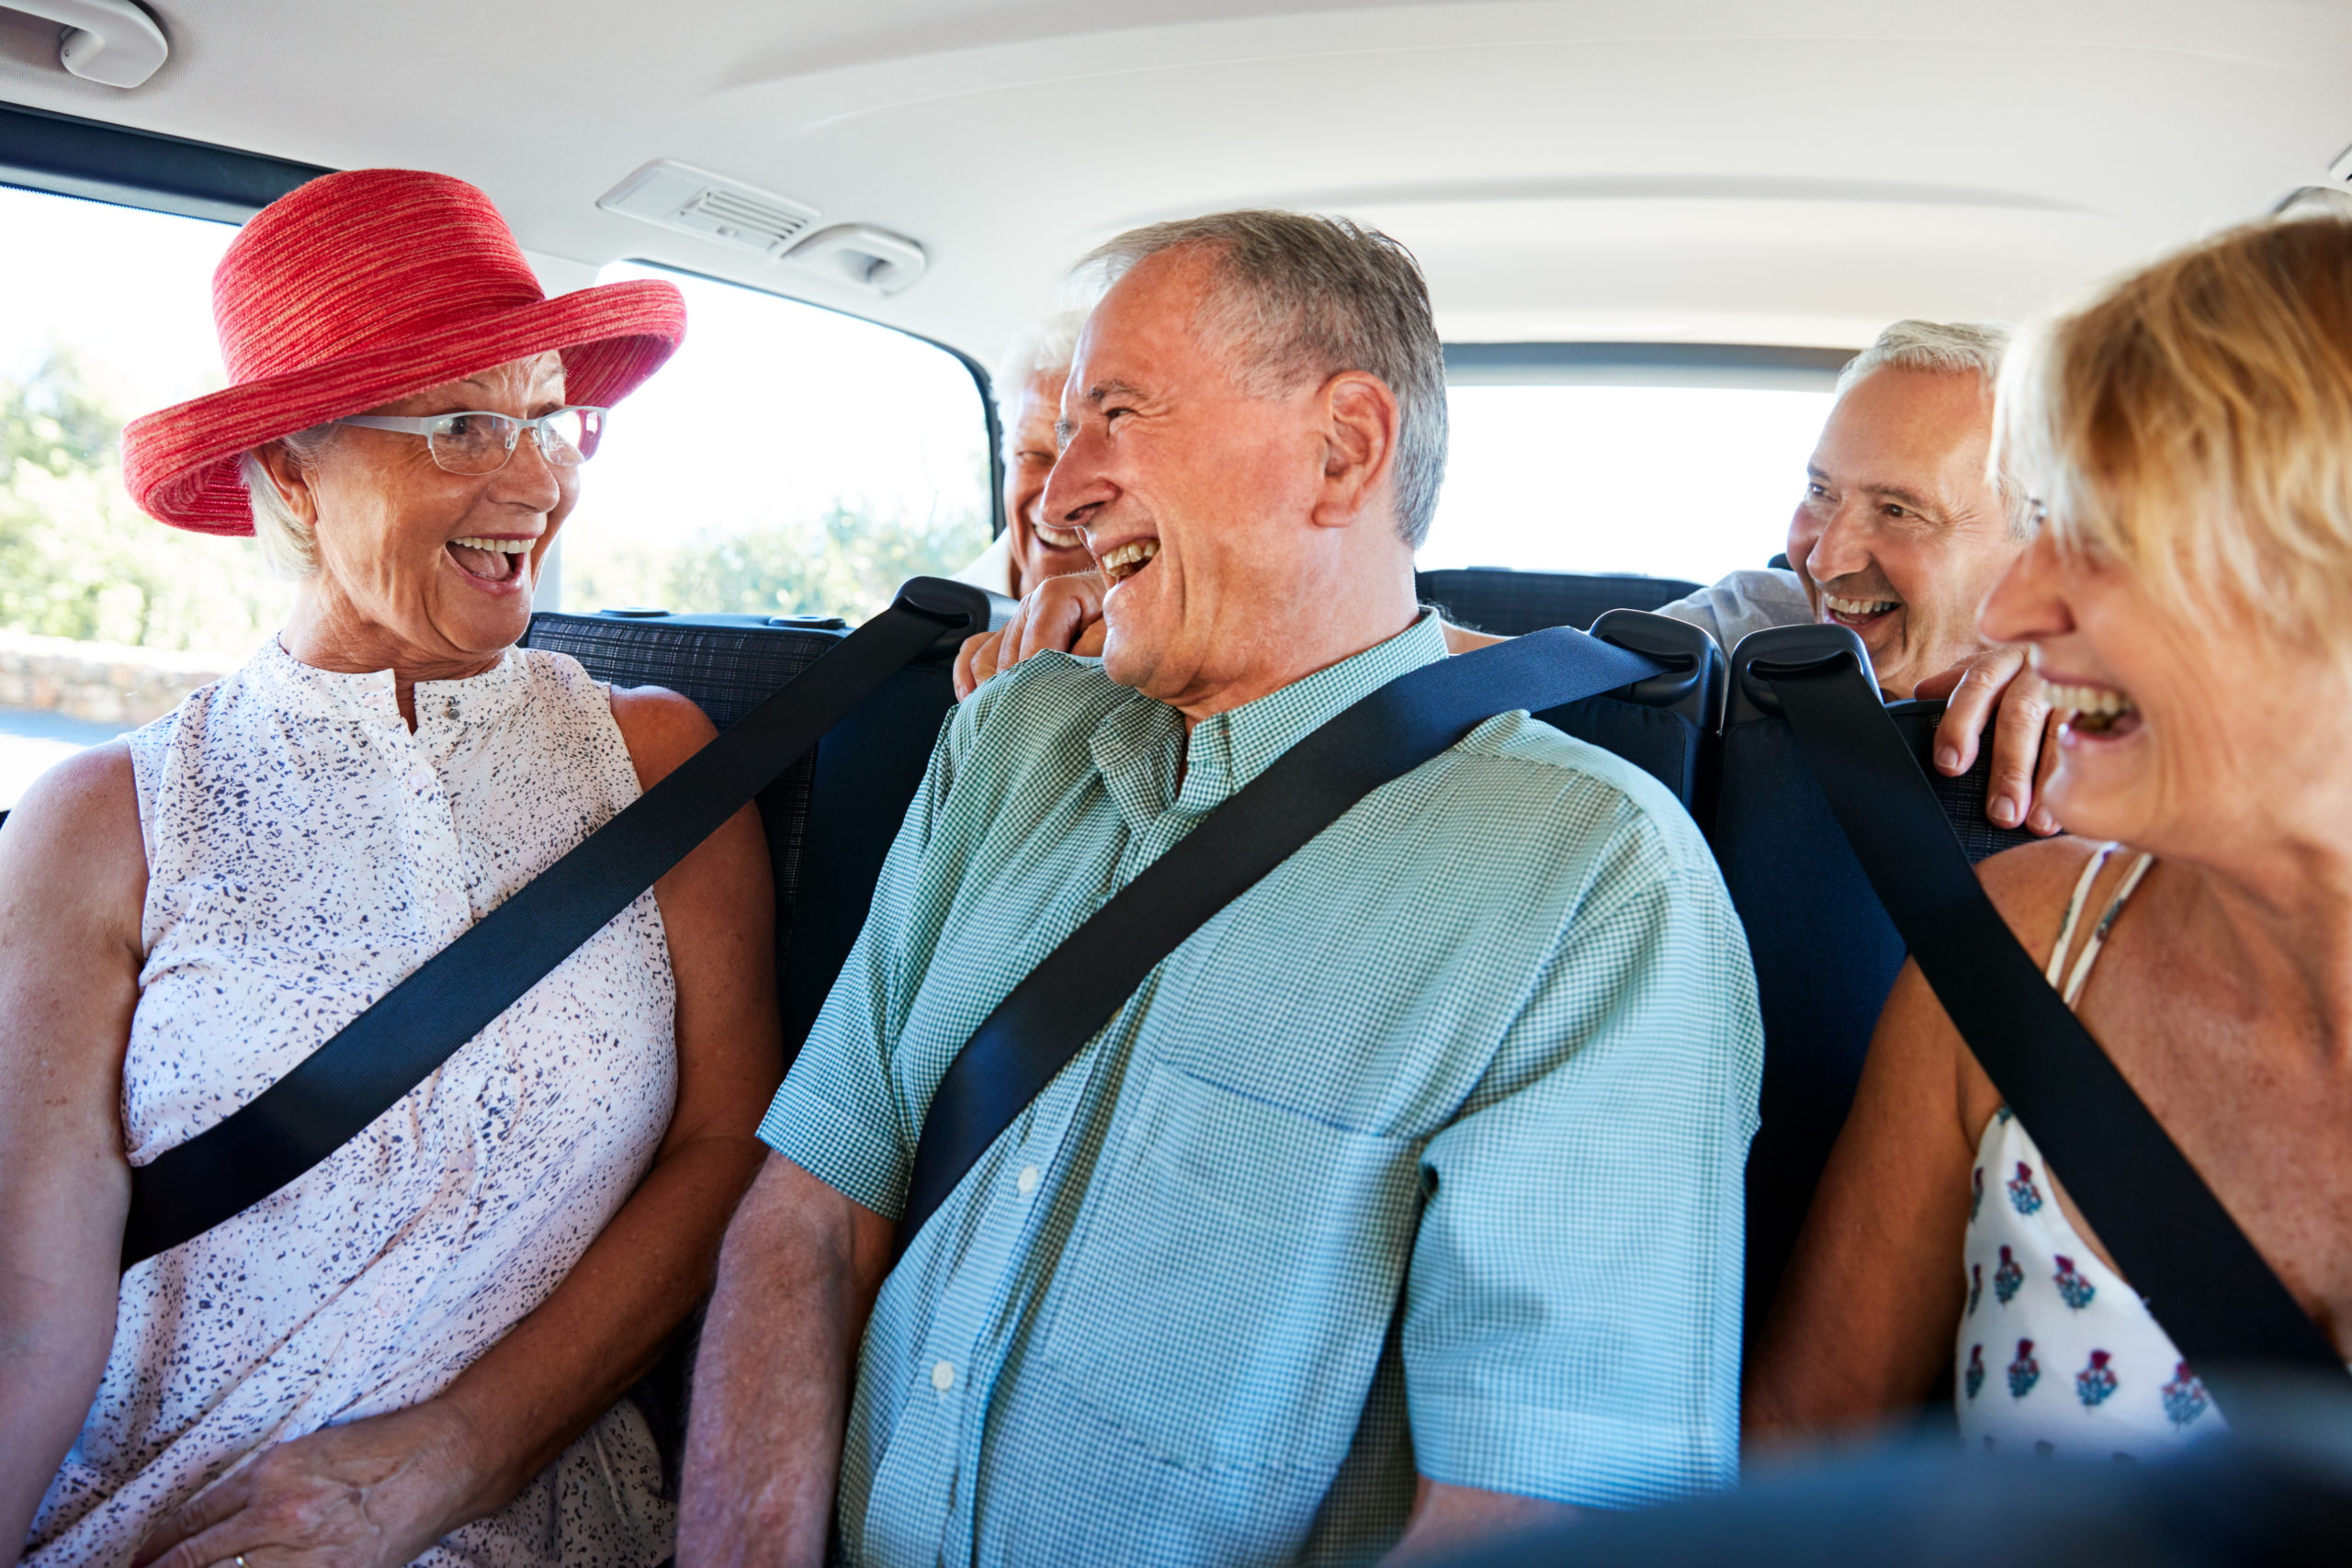 Transportation help for seniors